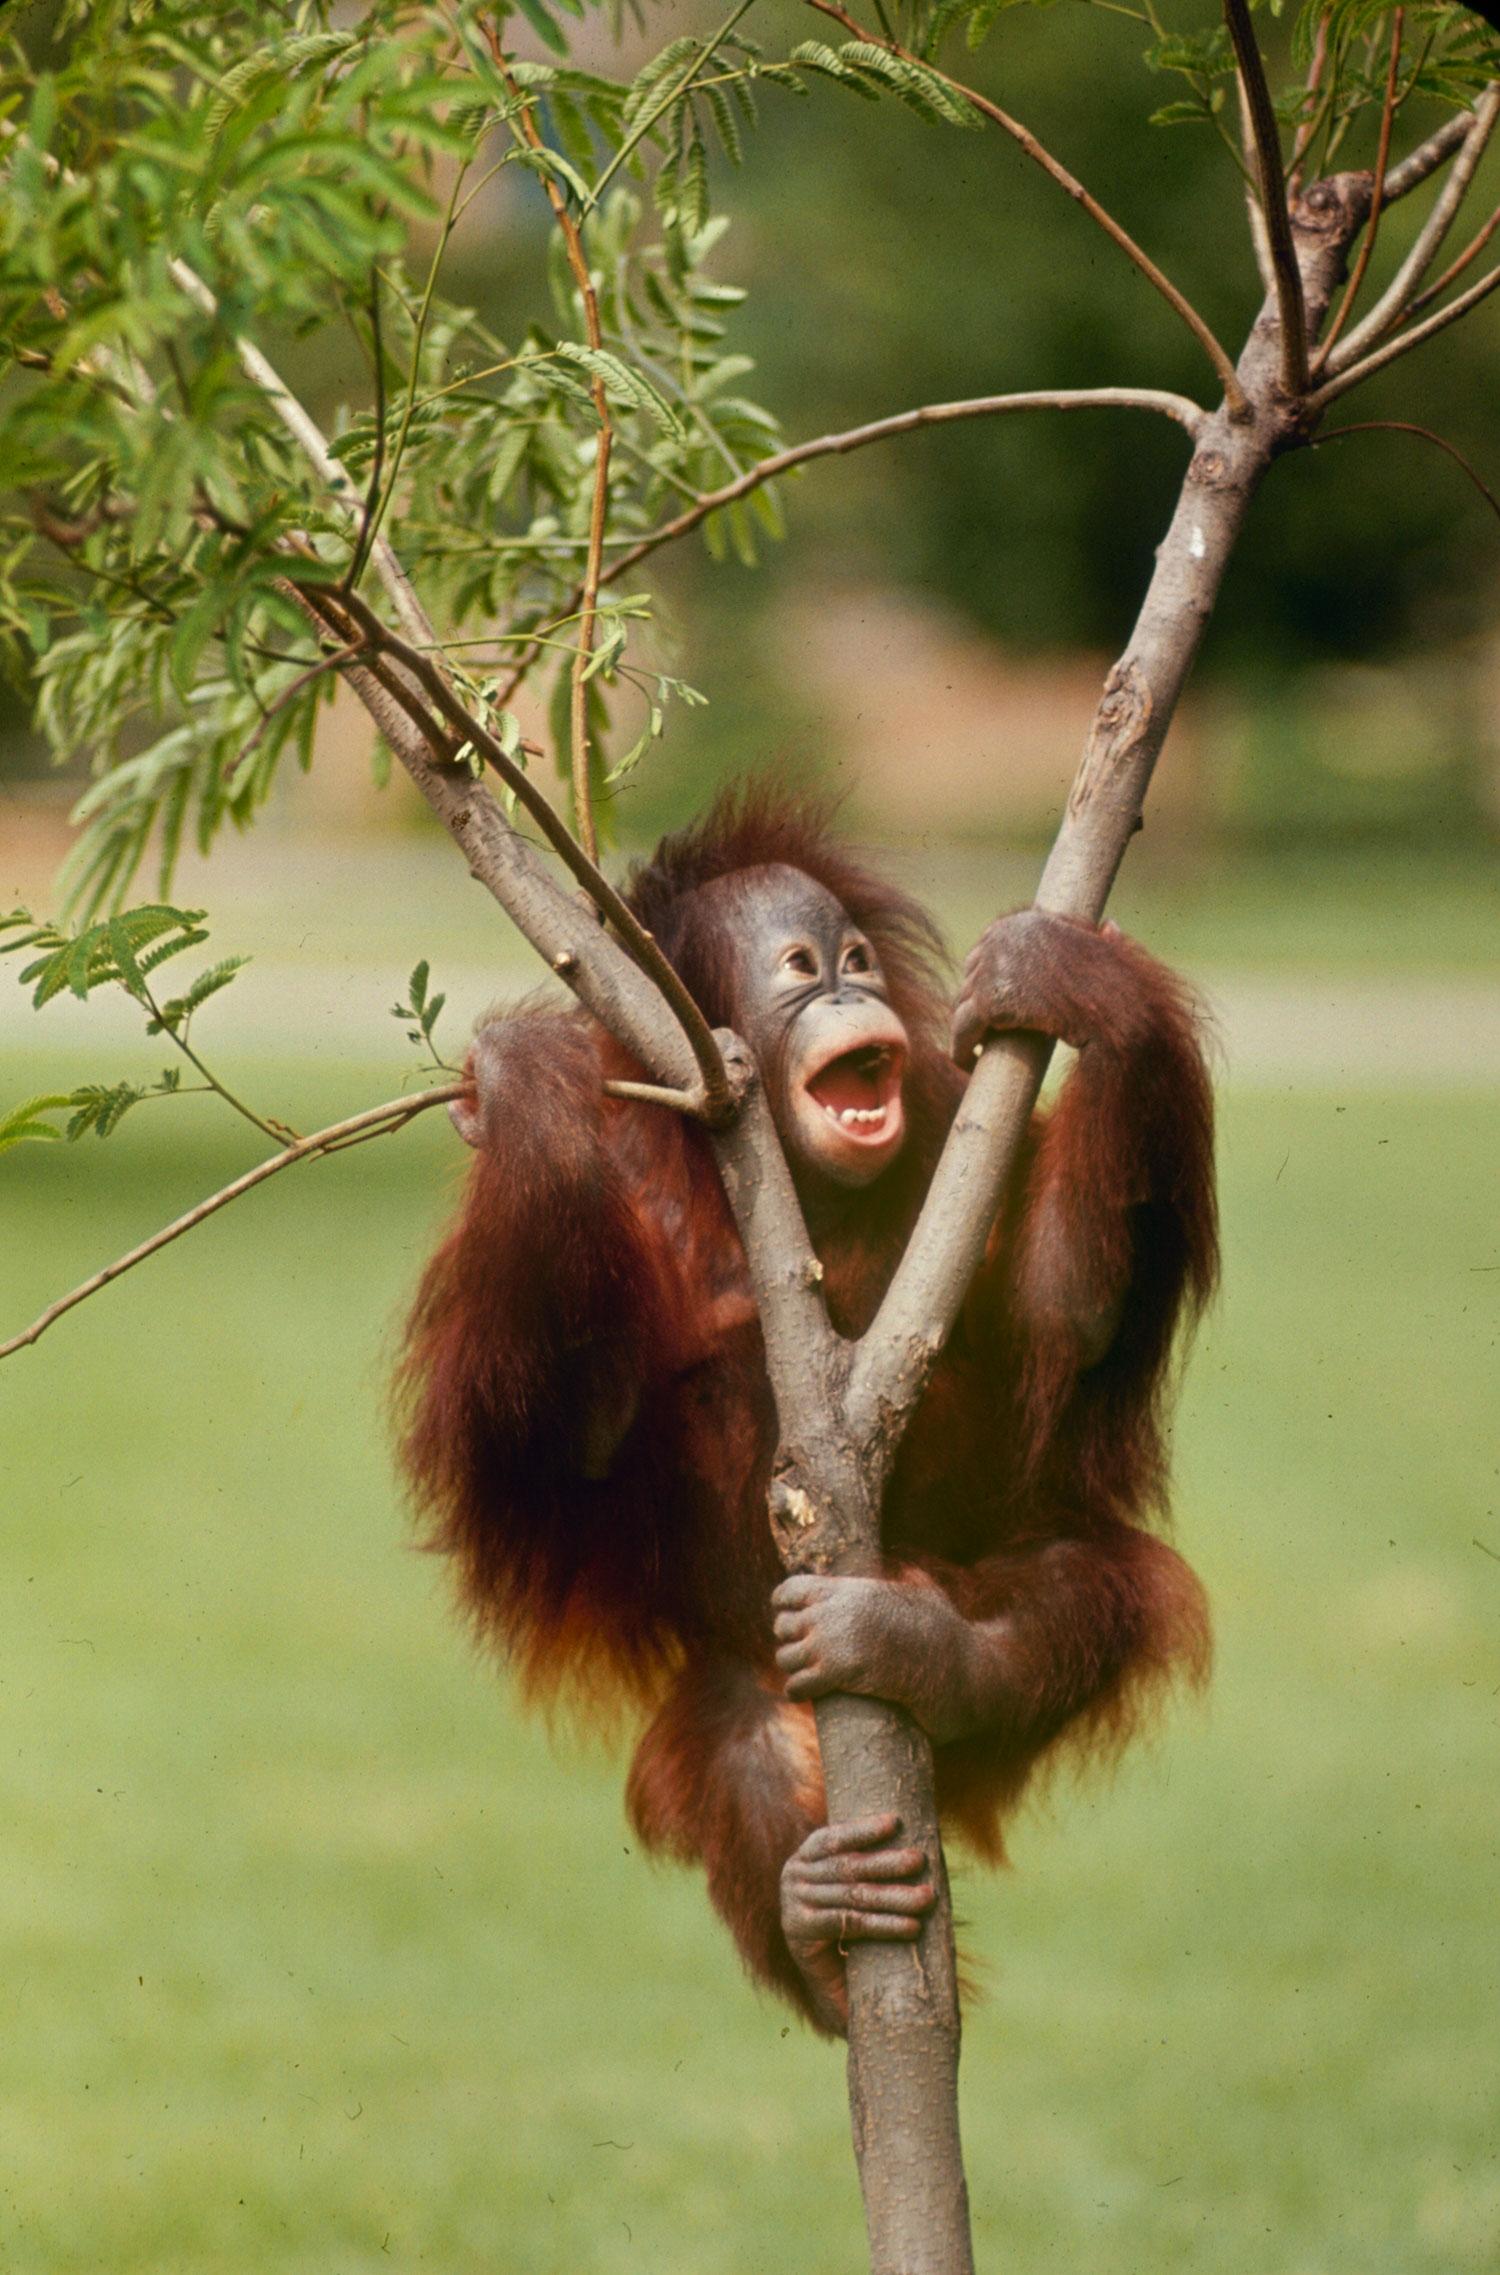 Orangutan, 1964